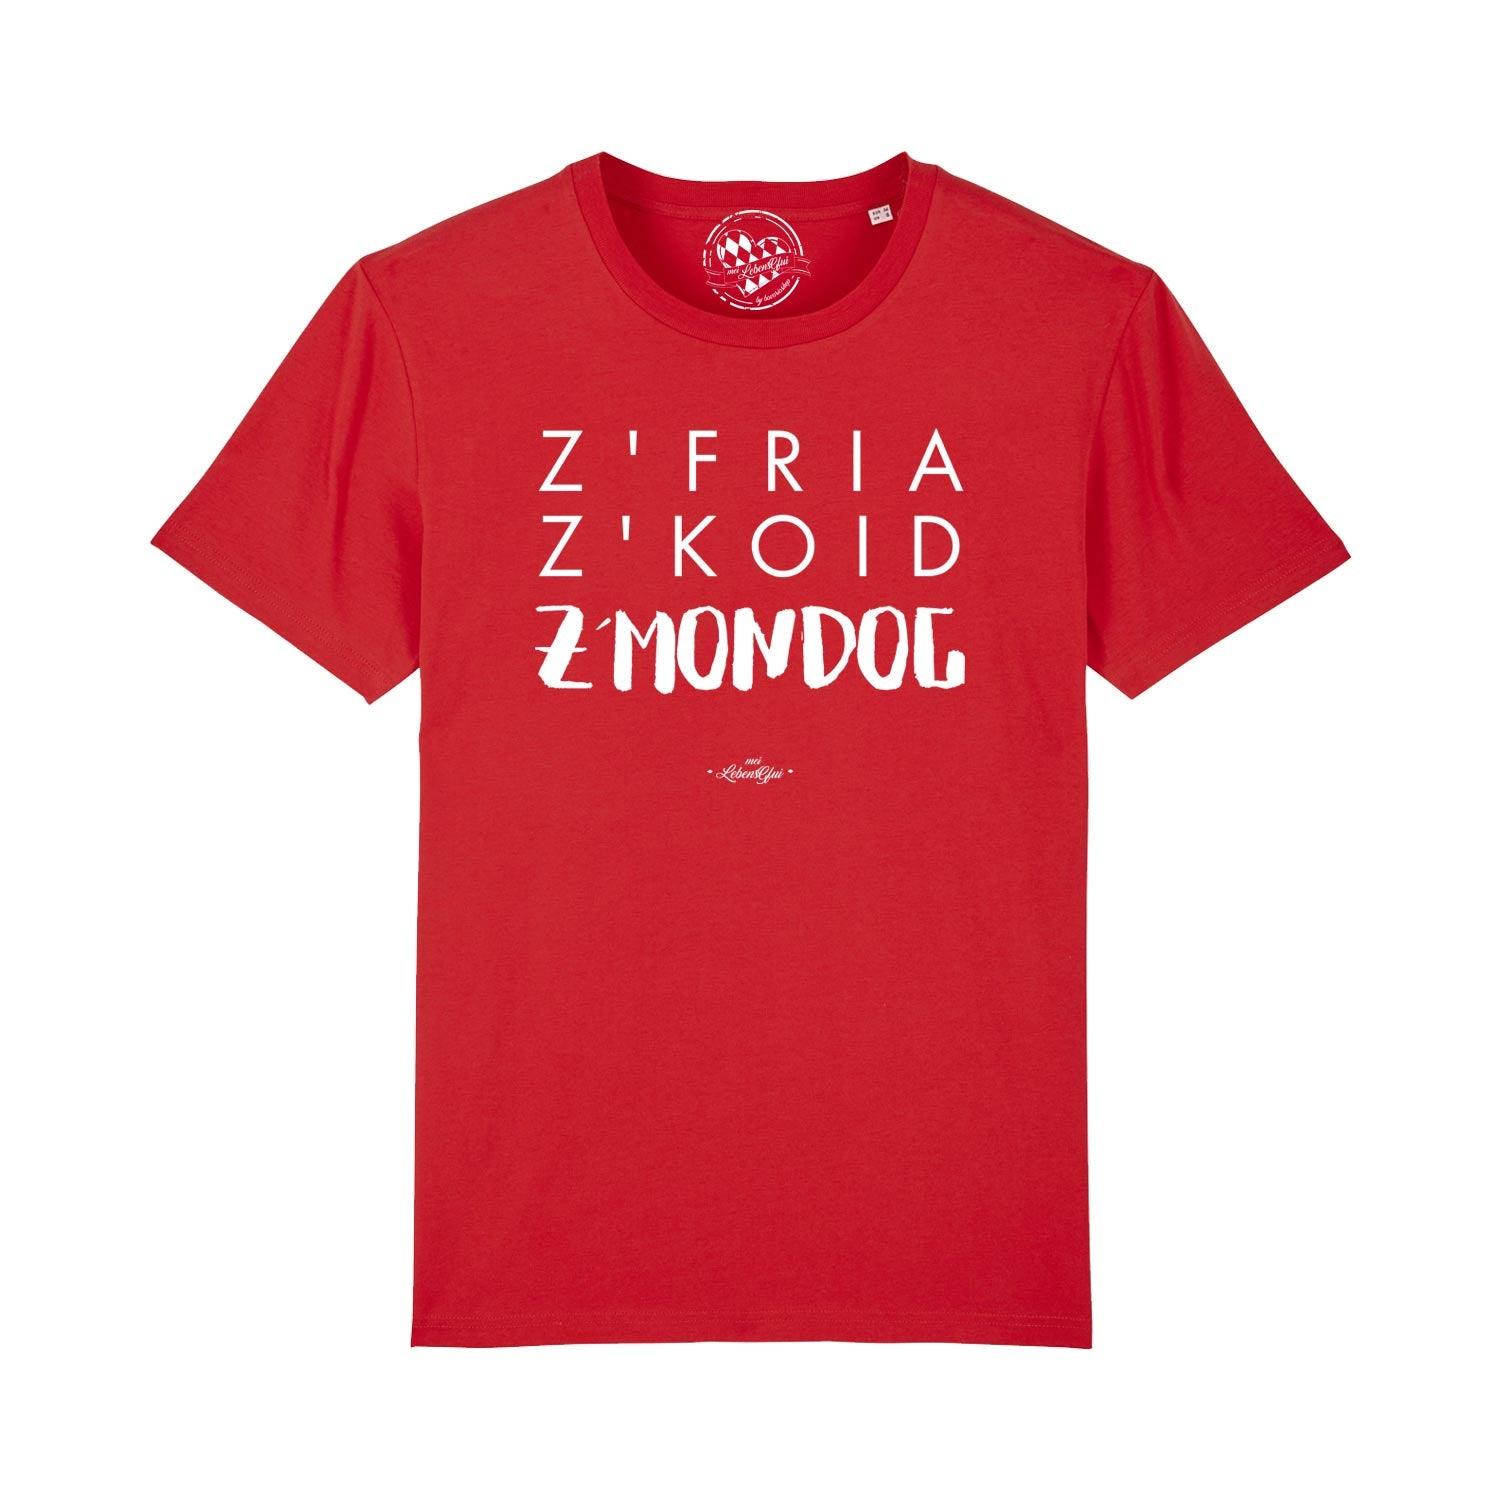 Herren T-Shirt "Z'fria z'koid z'Mondog..." - bavariashop - mei LebensGfui